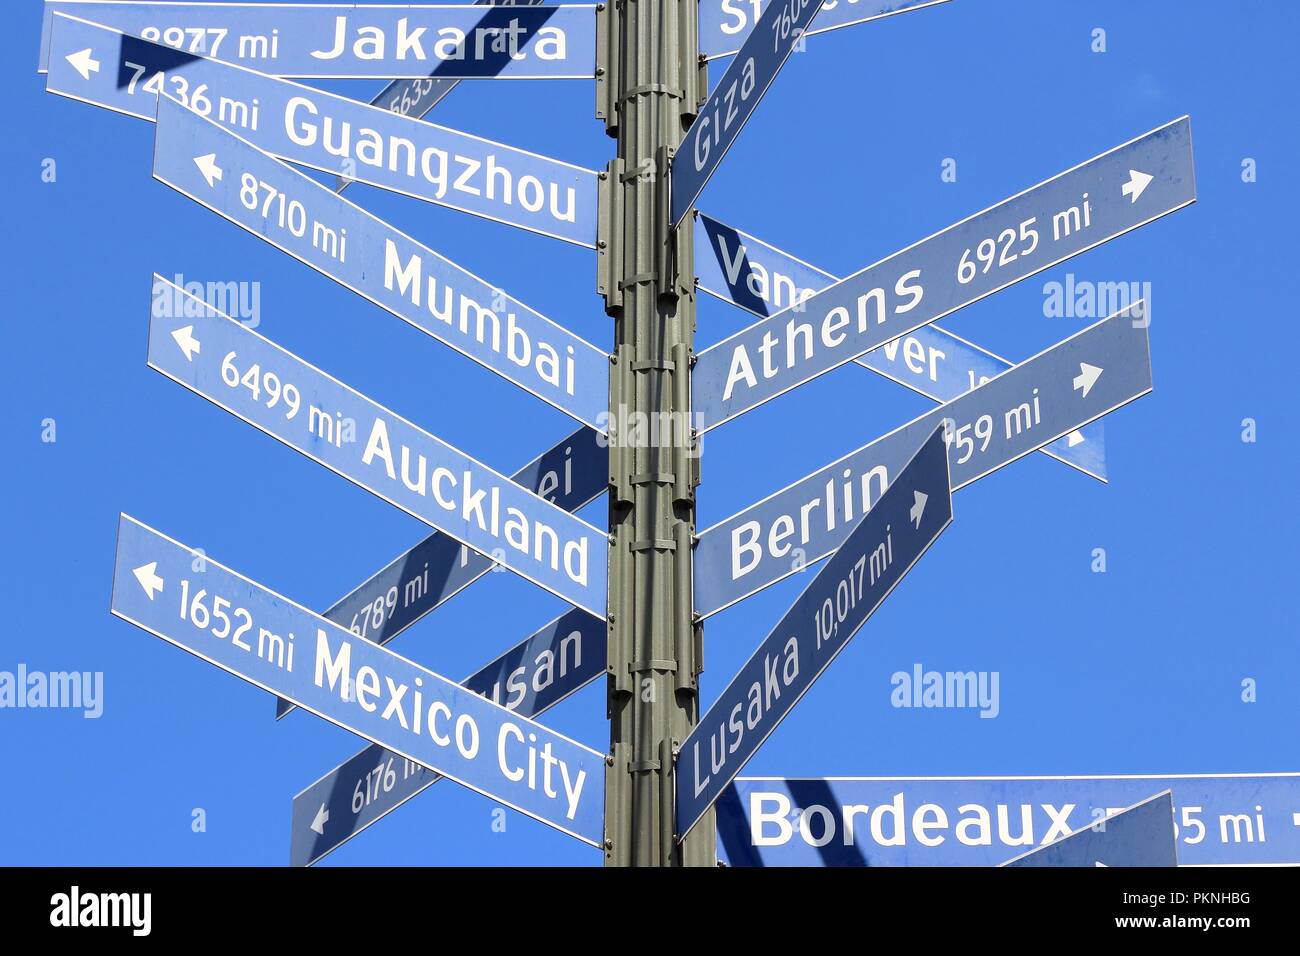 Los Angeles distancia signos a sus ciudades hermanas: Yakarta, Guangzhou, Burdeos, Mumbai, Ciudad de México, Atenas, Auckland, Berlín y Lusaka. Foto de stock